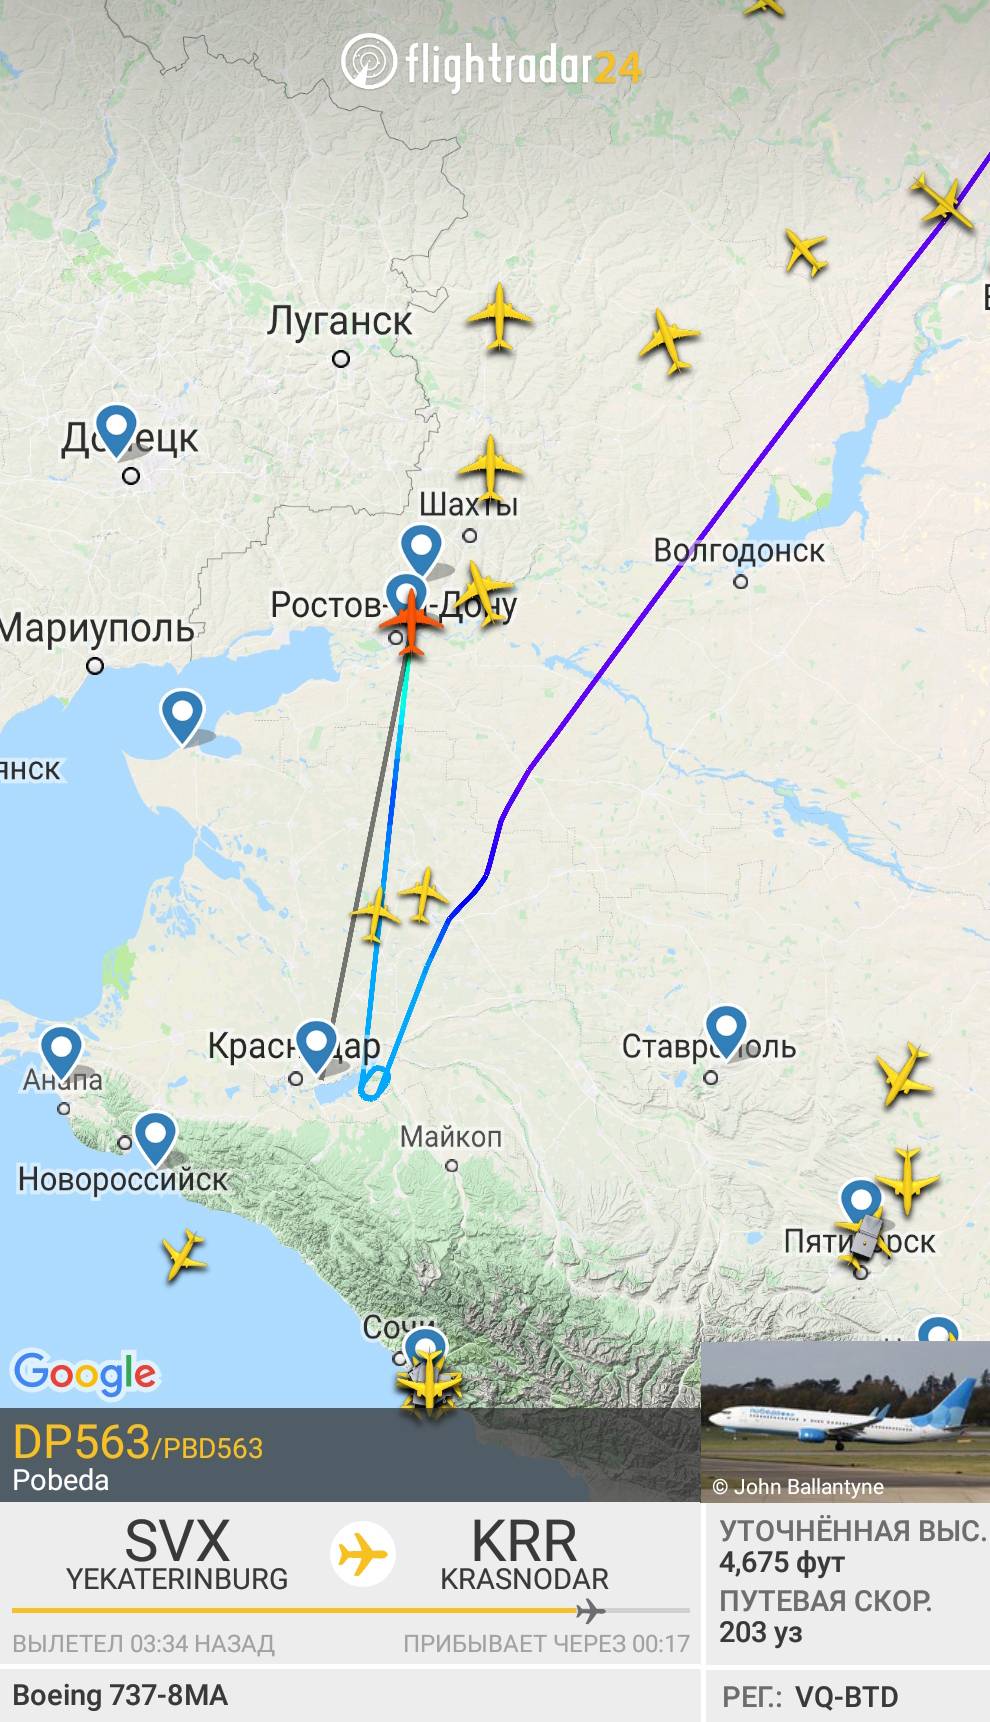 А вот тот же самолет уходит в Ростов. Так я еще до объявления задержки рейса понял, что придется ждать минимум пару лишних часов